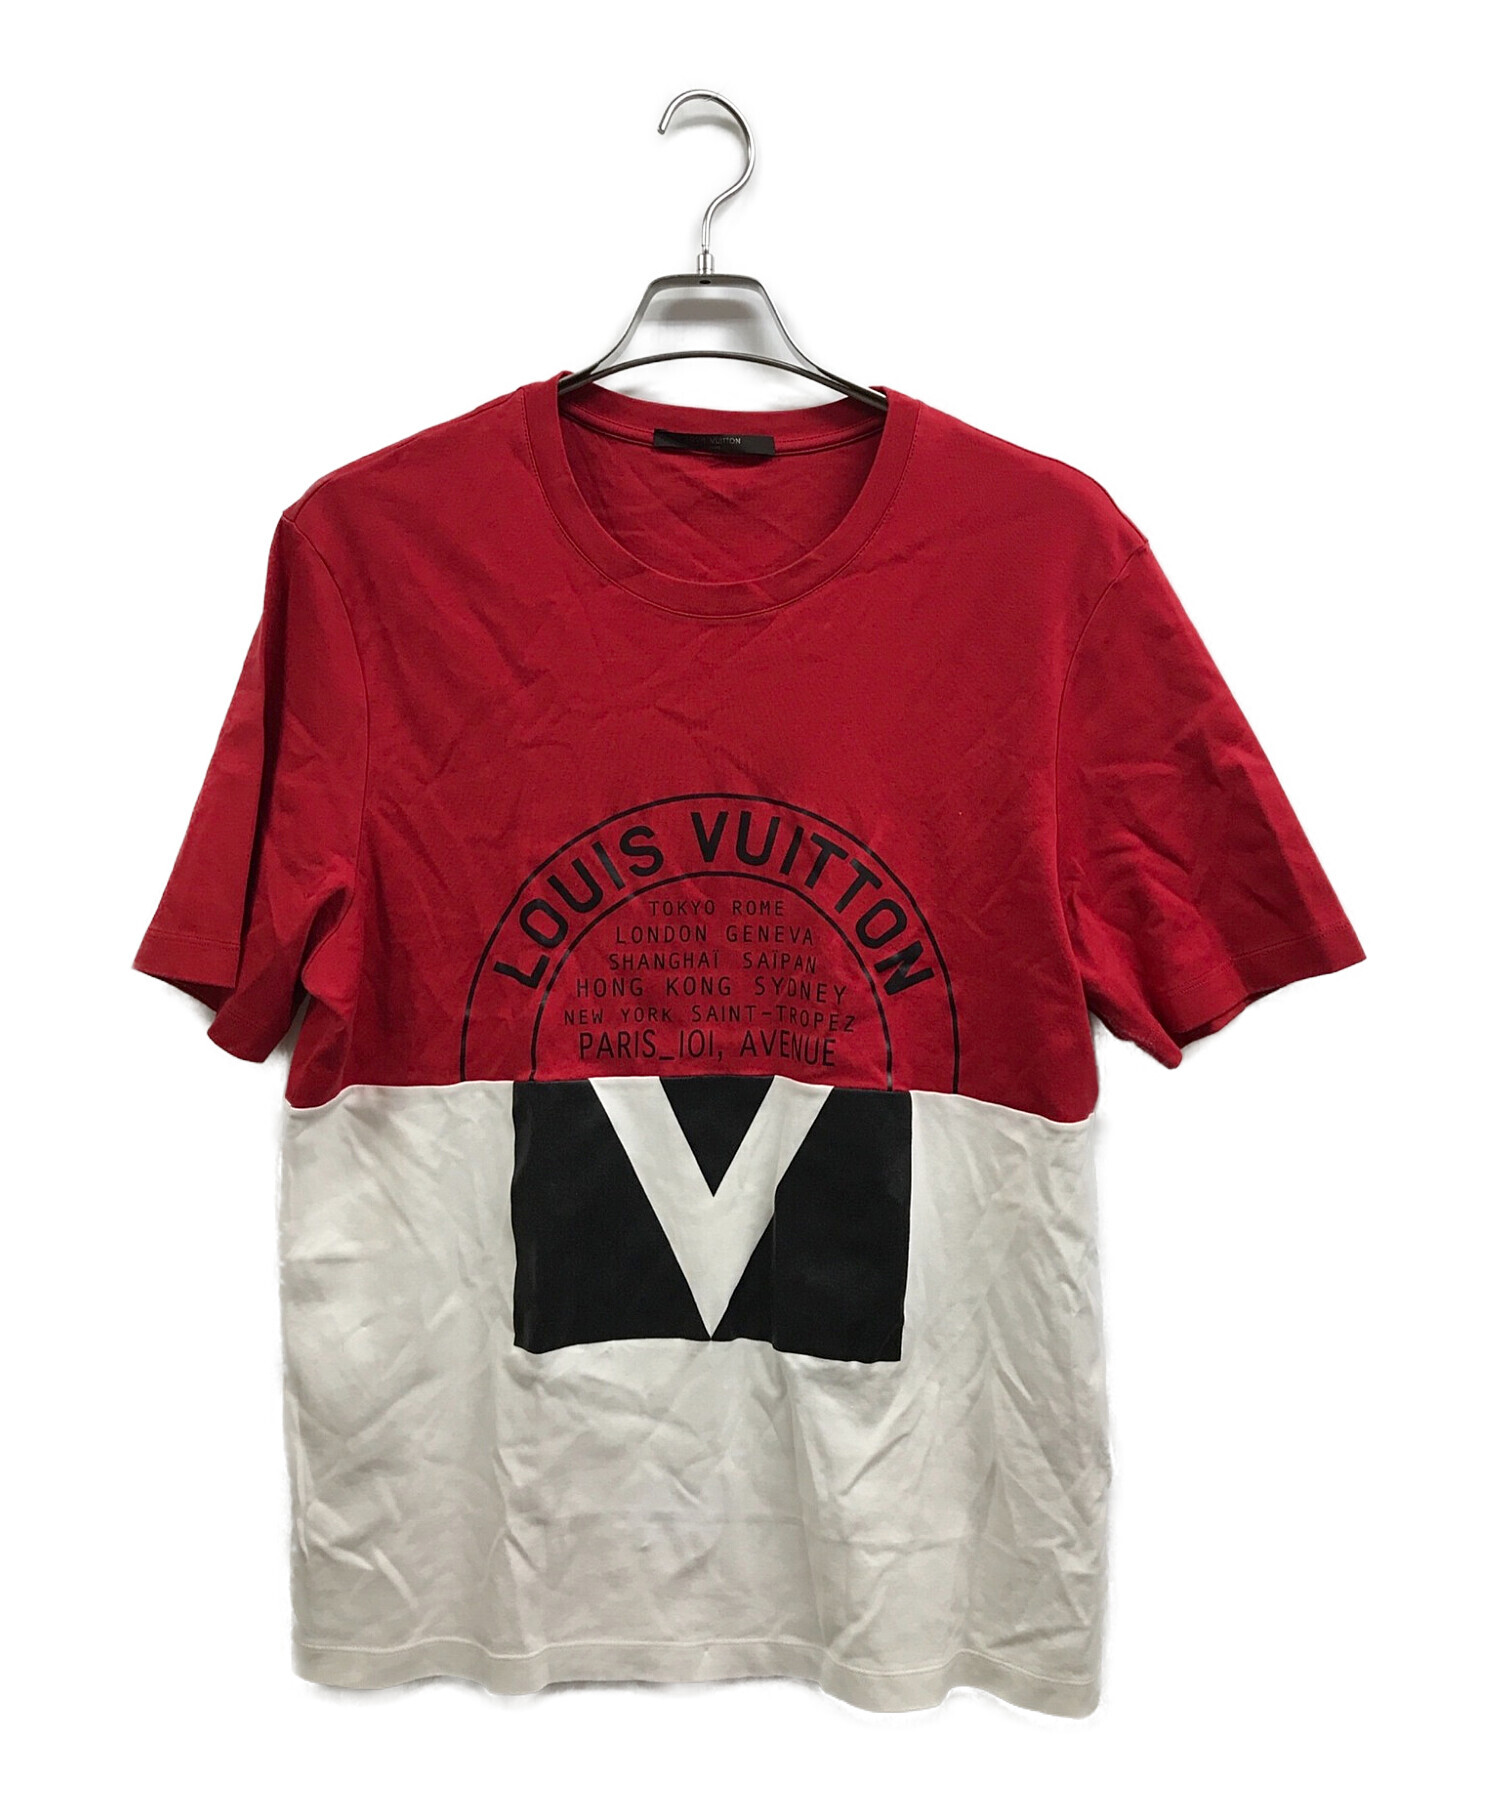 LOUIS VUITTON (ルイ ヴィトン) バイカラーTシャツ レッド×ホワイト サイズ:XL